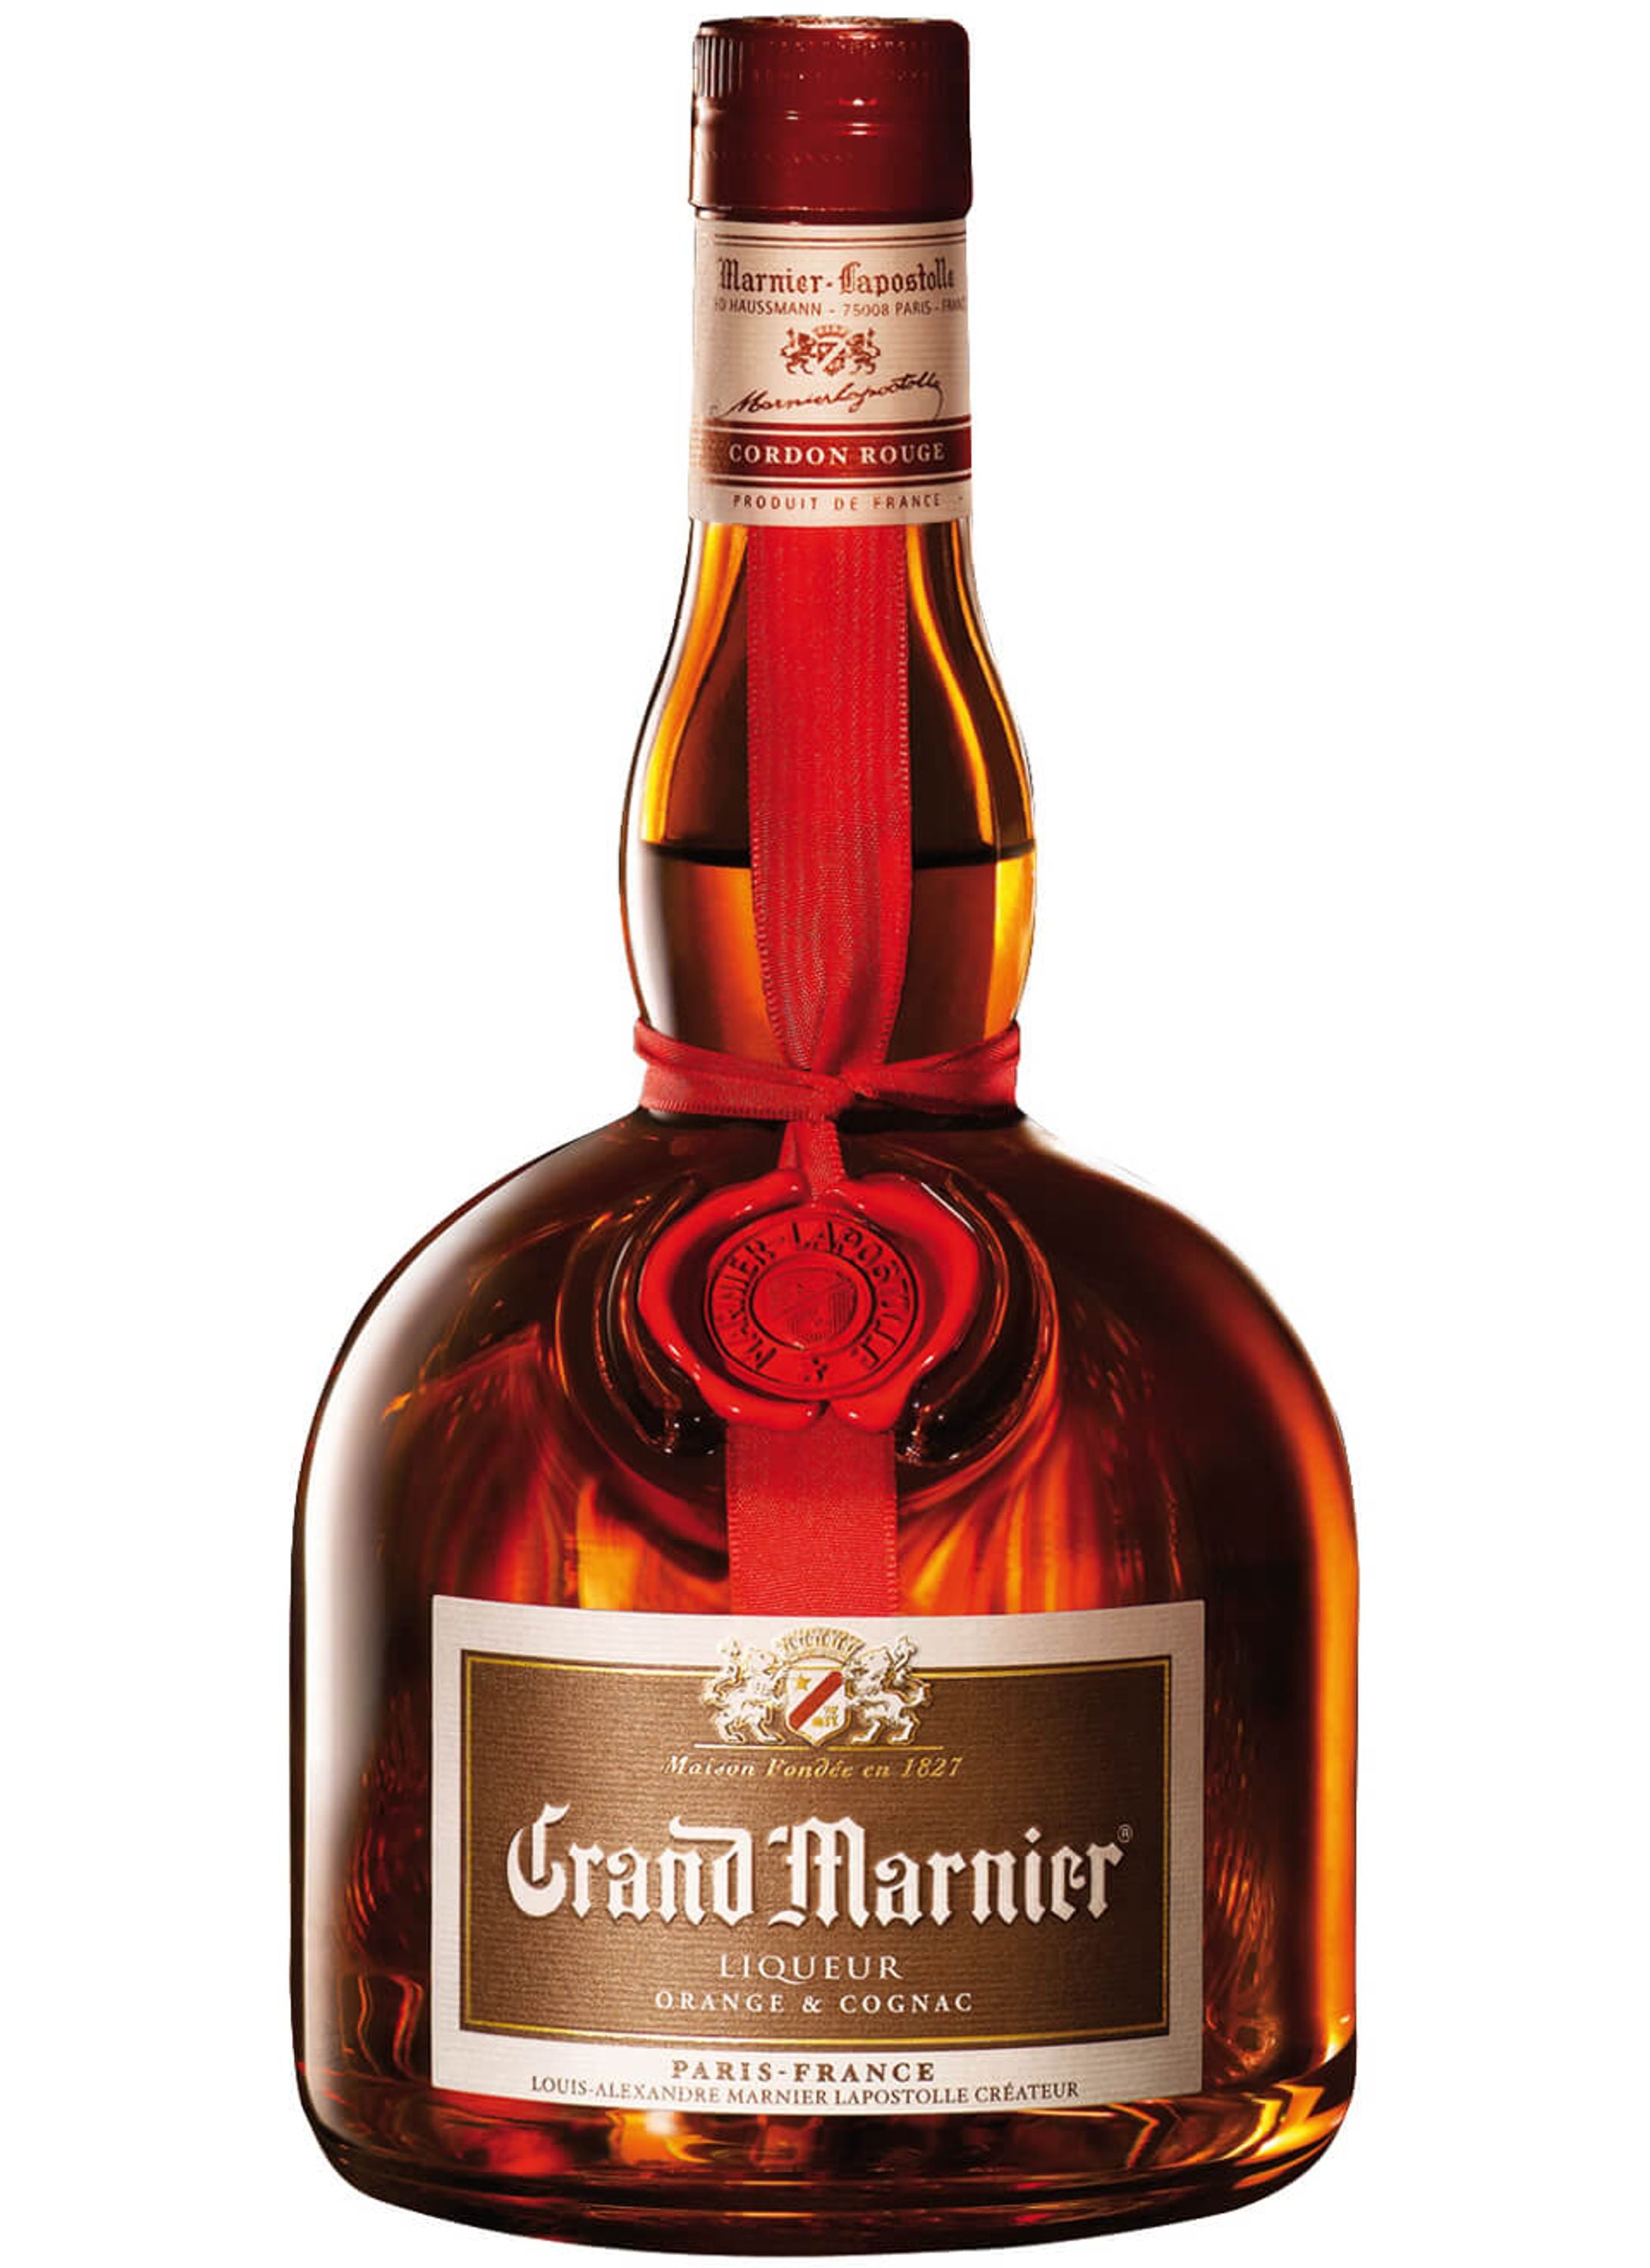 Grand Marnier 0.7l, alc. 40% by volume, cognac orange liqueur France